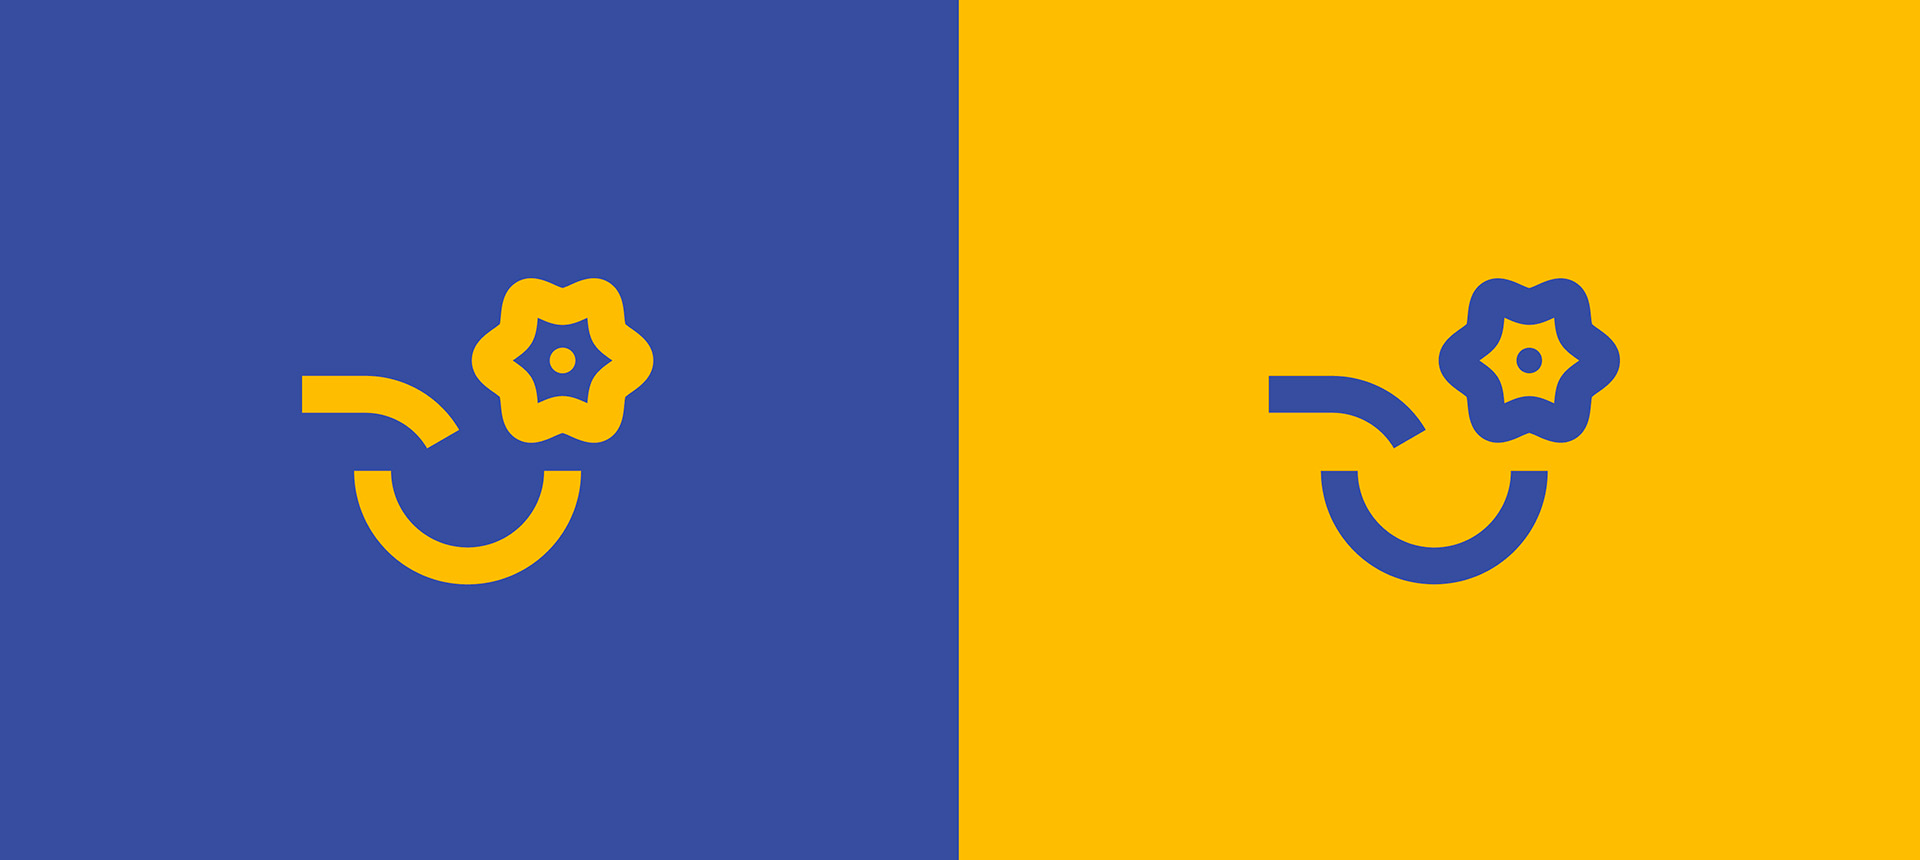 Logo simplifié sans le texte. L'un est bleu sur fond jaune, l'autre est jaune sur fond bleu.